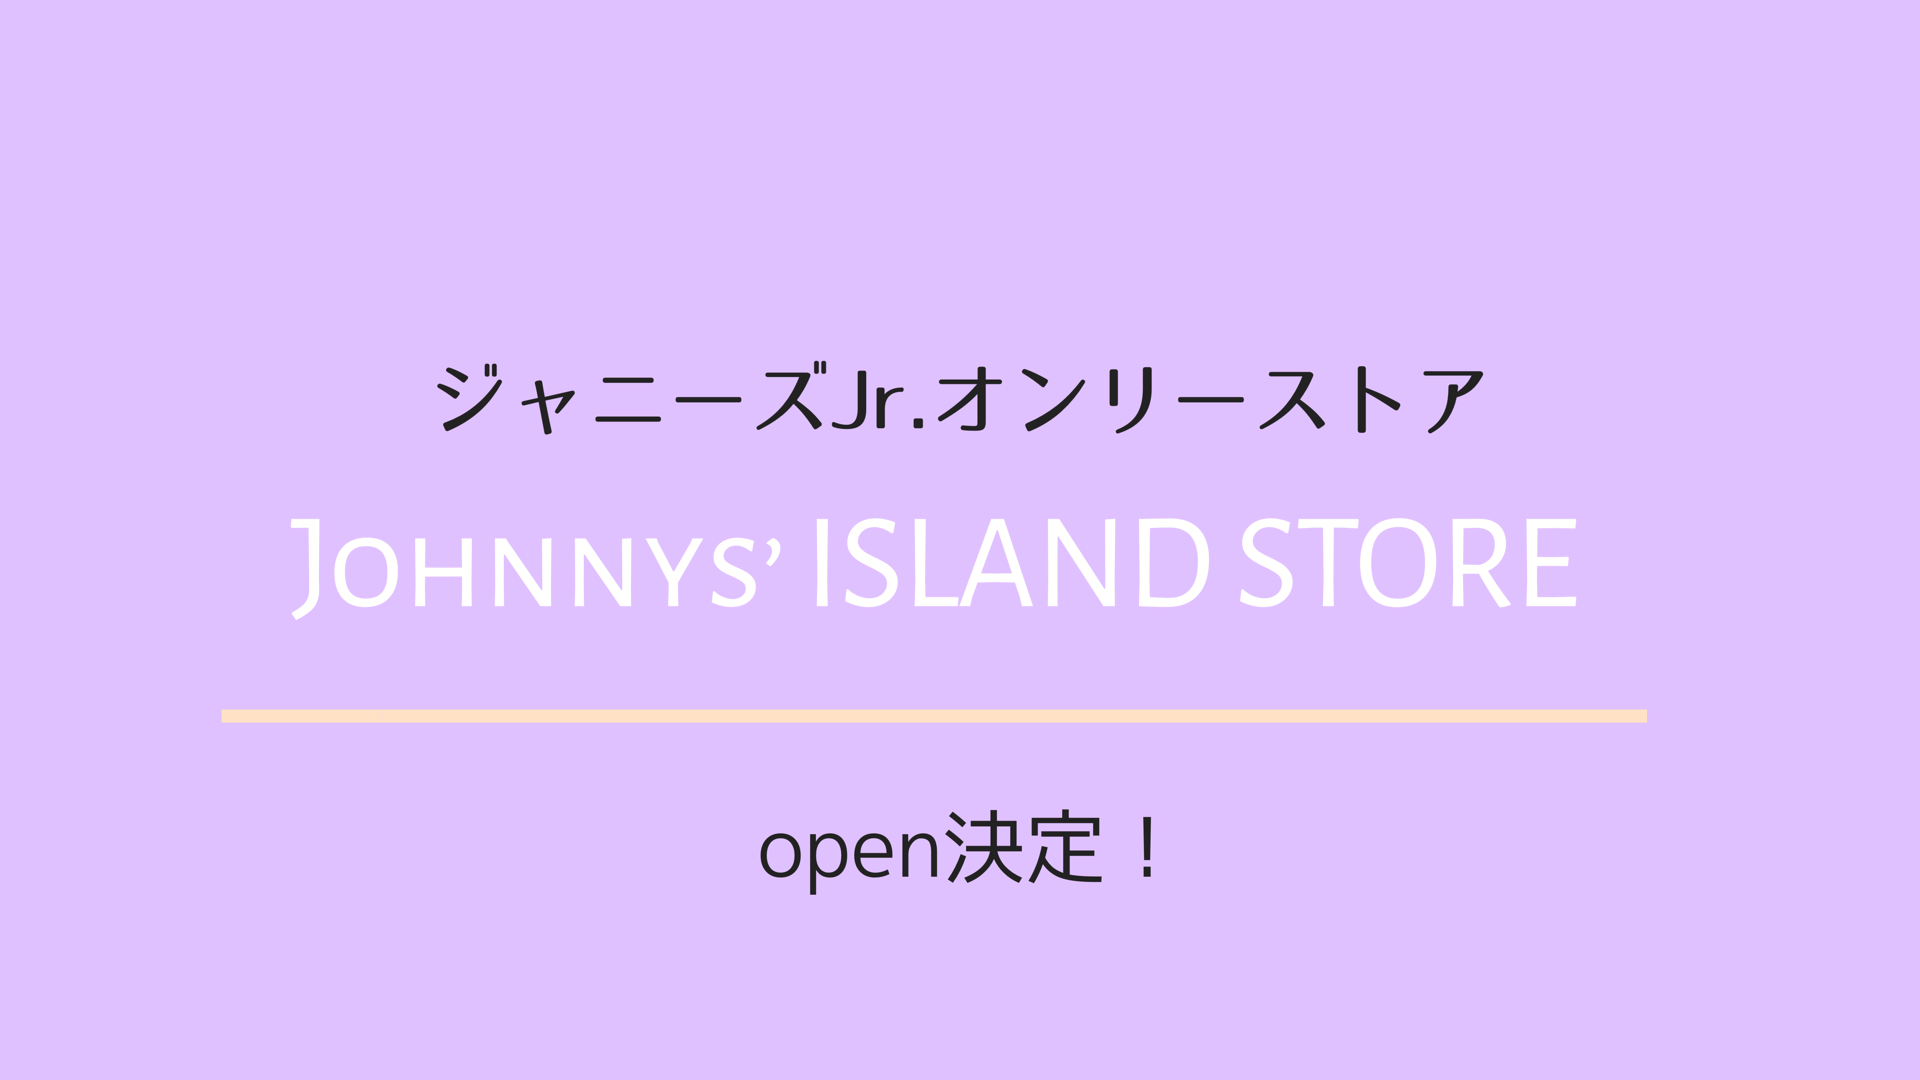 ジャニーズ Jr.オンリーストア「Johnnys' ISLAND STORE」 オープン決定 